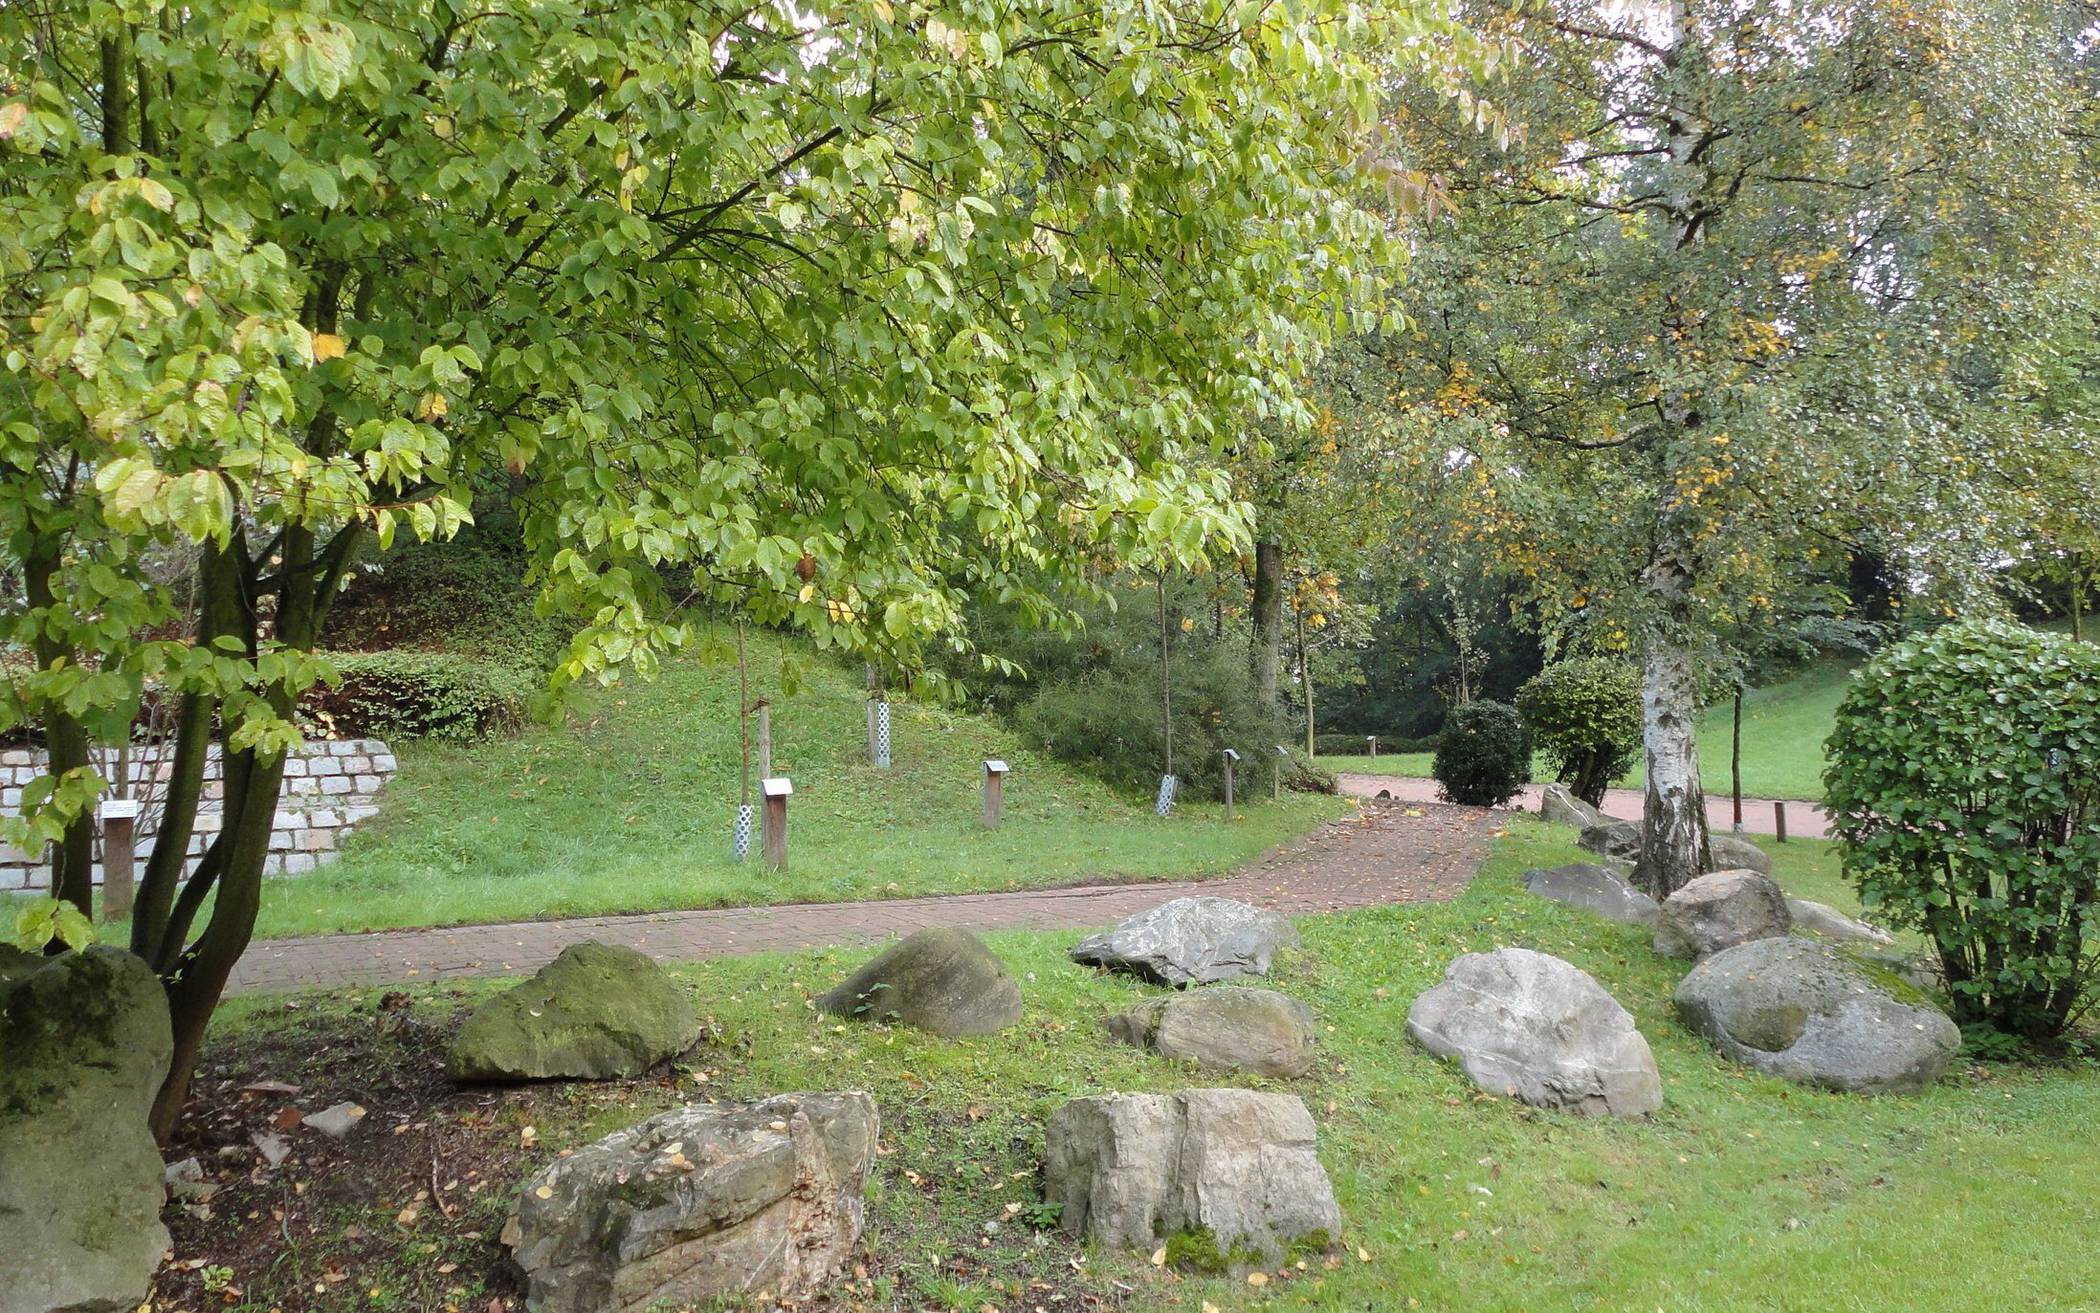  Das Uni-Arboretum auf dem Campus Grifflenberg umfasst aktuell 102 Baum- und Straucharten. 